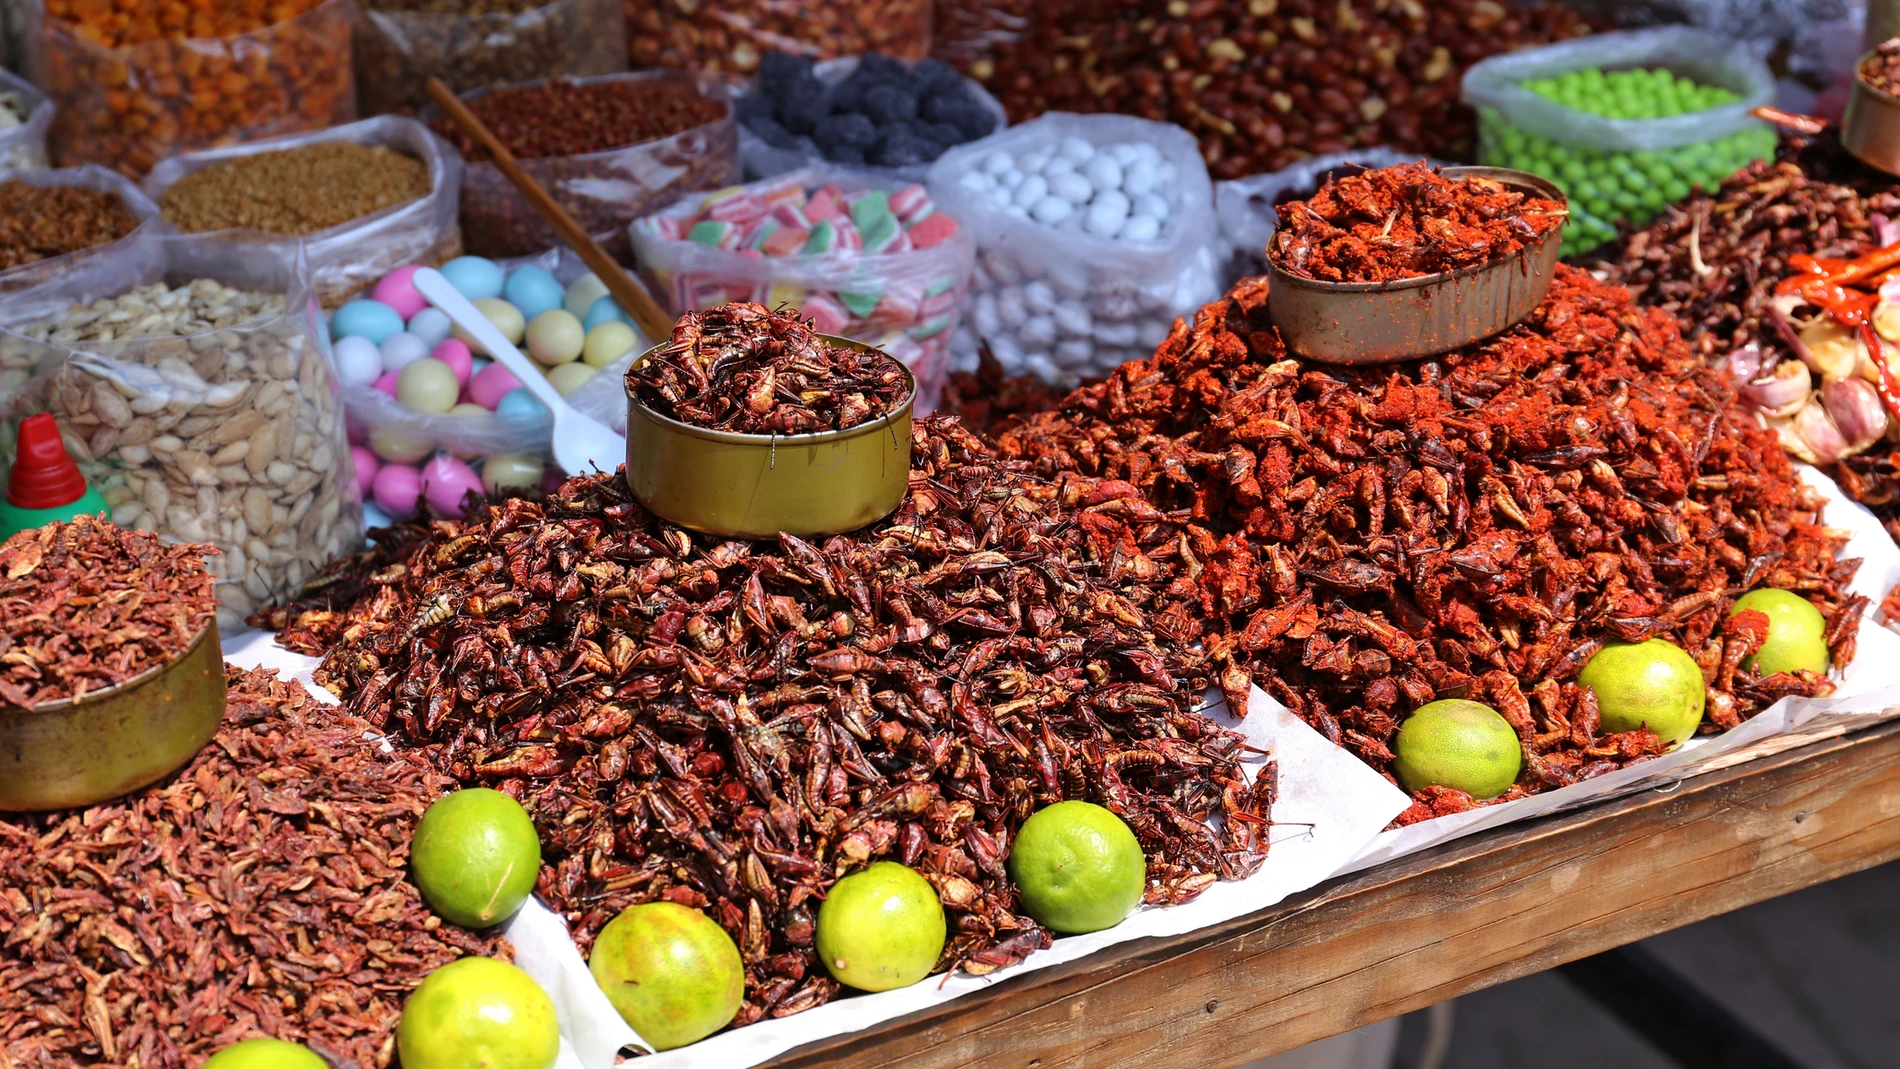 Puesto de insectos en un mercado asiático.